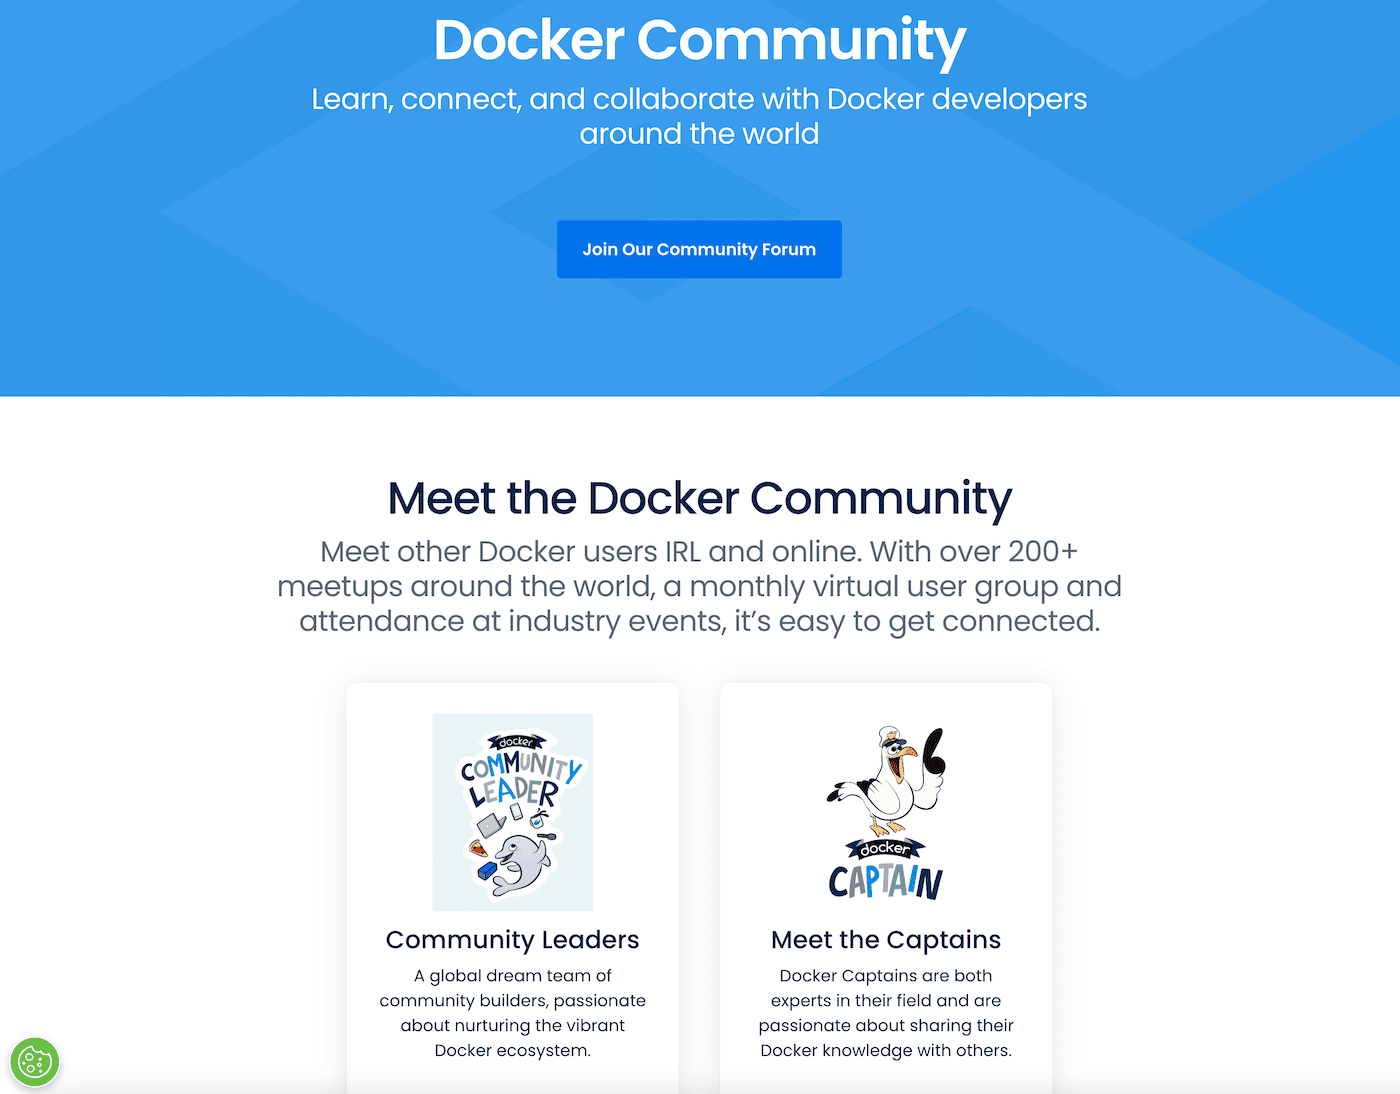 Docker’s community